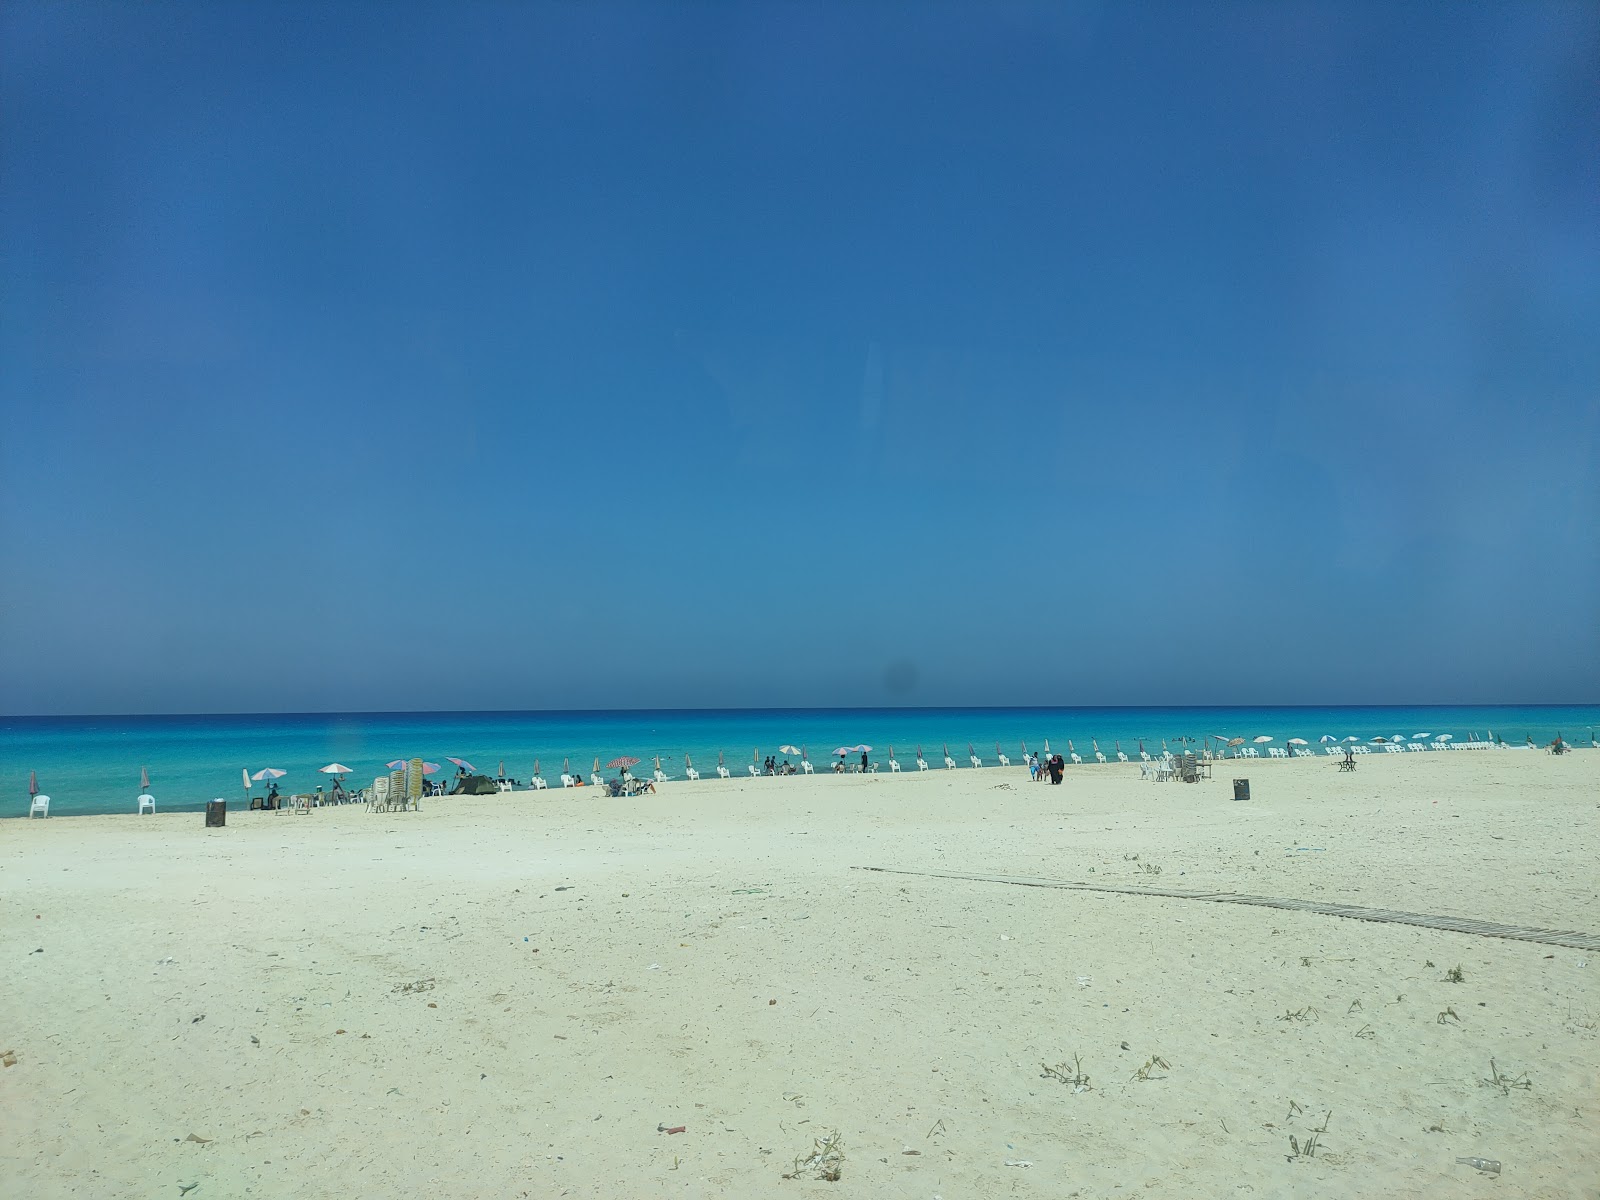 Fotografie cu Umm al-Rakhm Beach - locul popular printre cunoscătorii de relaxare